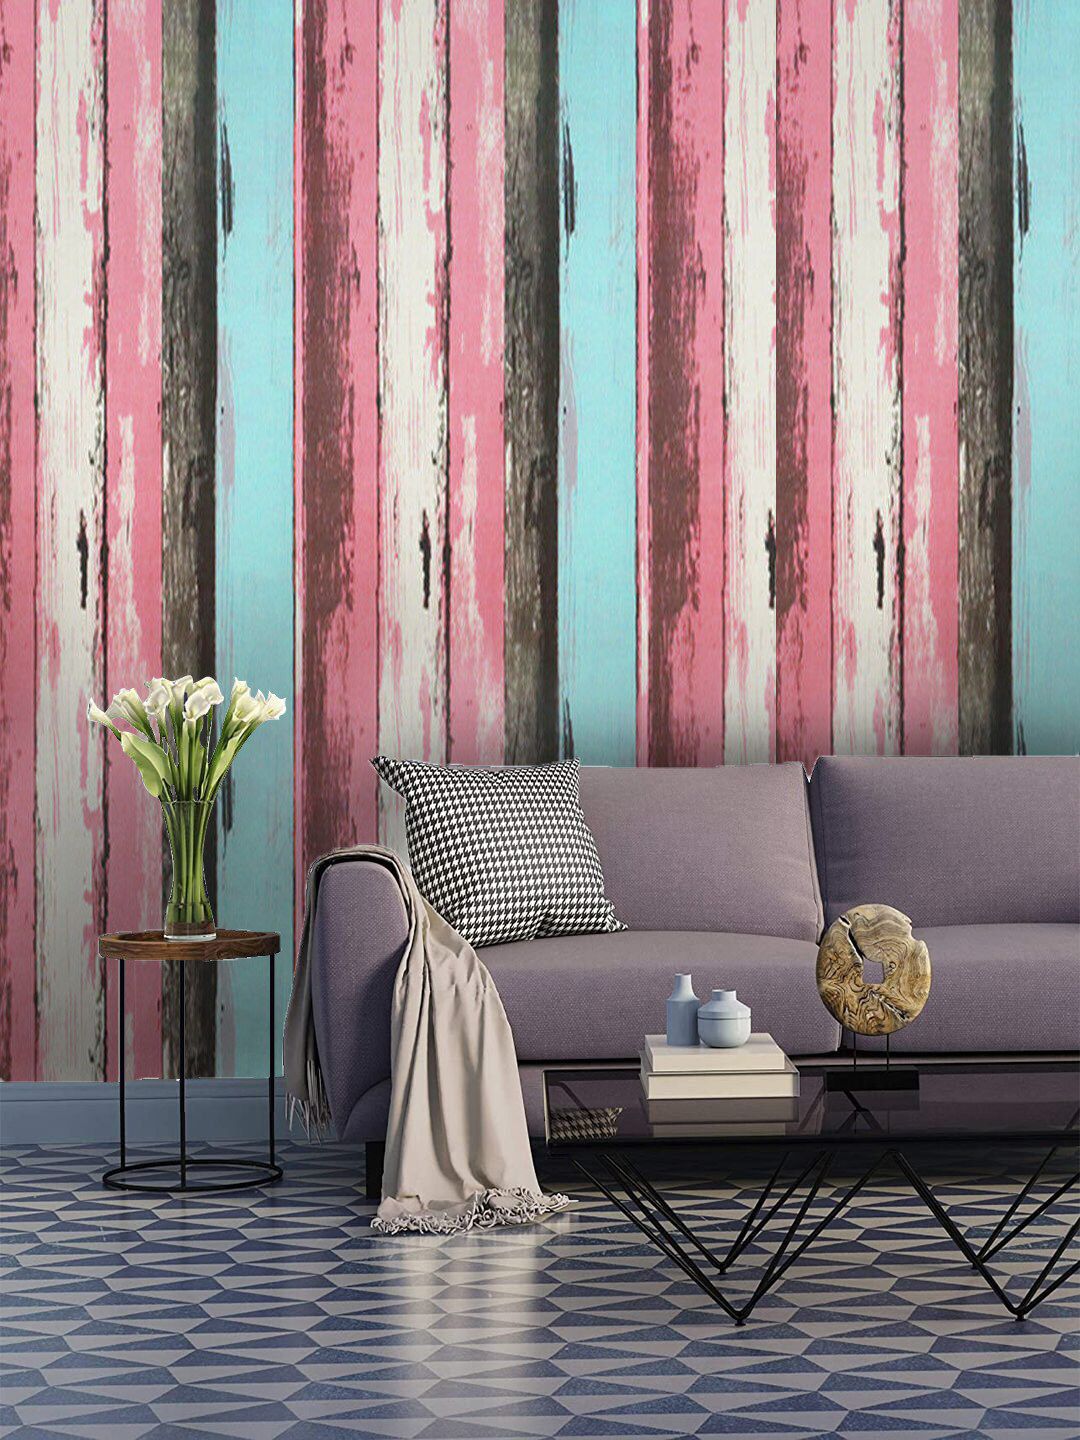 Jaamso Royals Pink & Black Wood Textured Self-Adhesive Waterproof Wallpaper Price in India